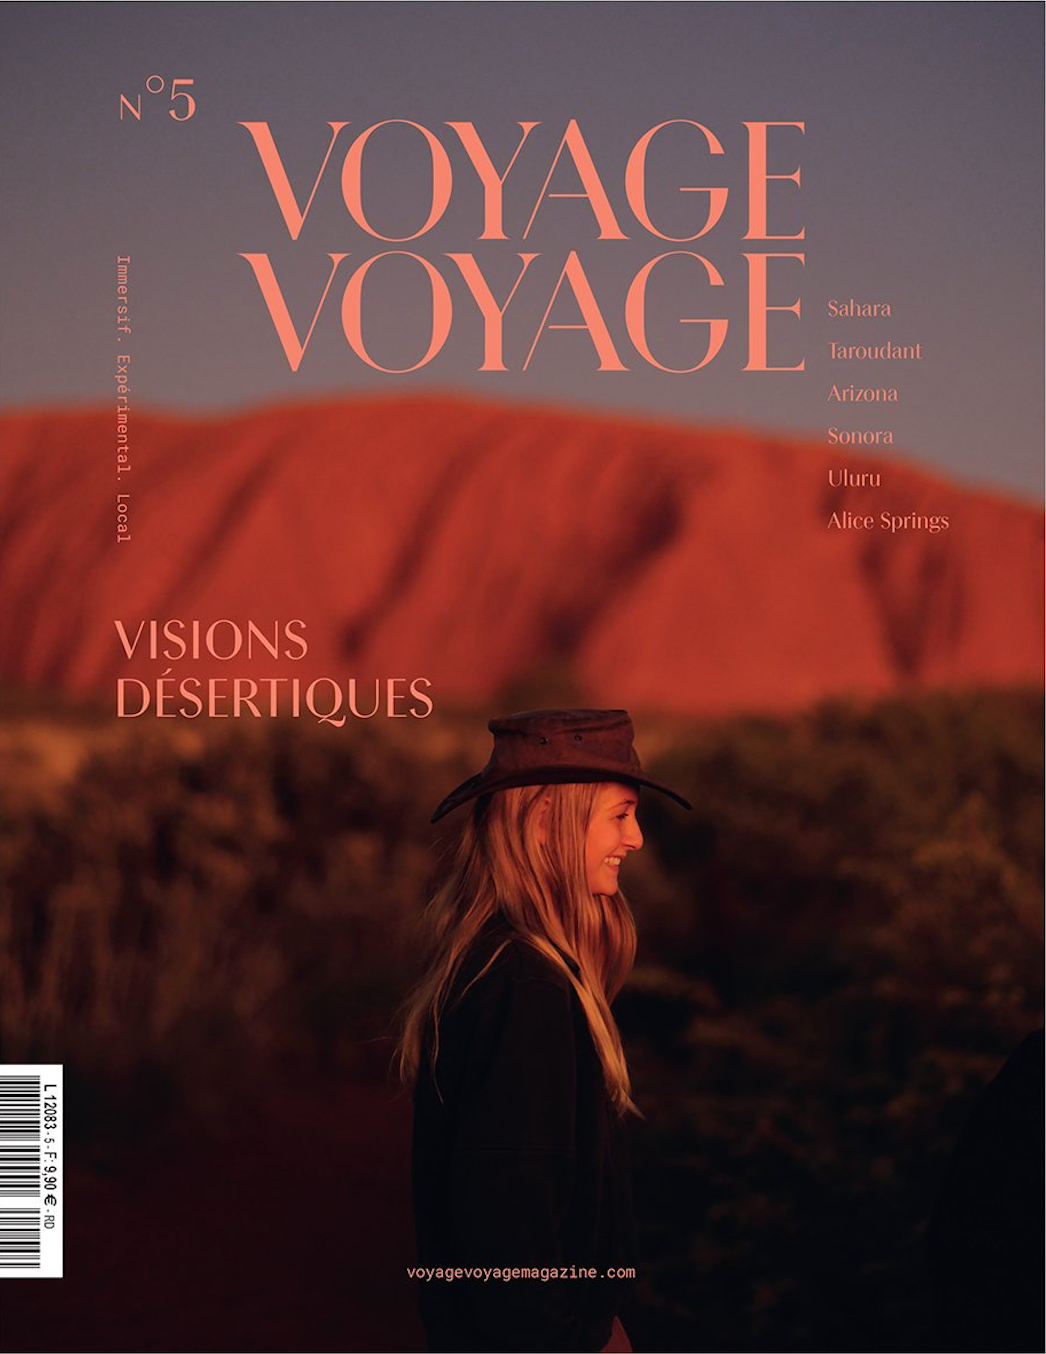 Voyage Voyage Issue 5